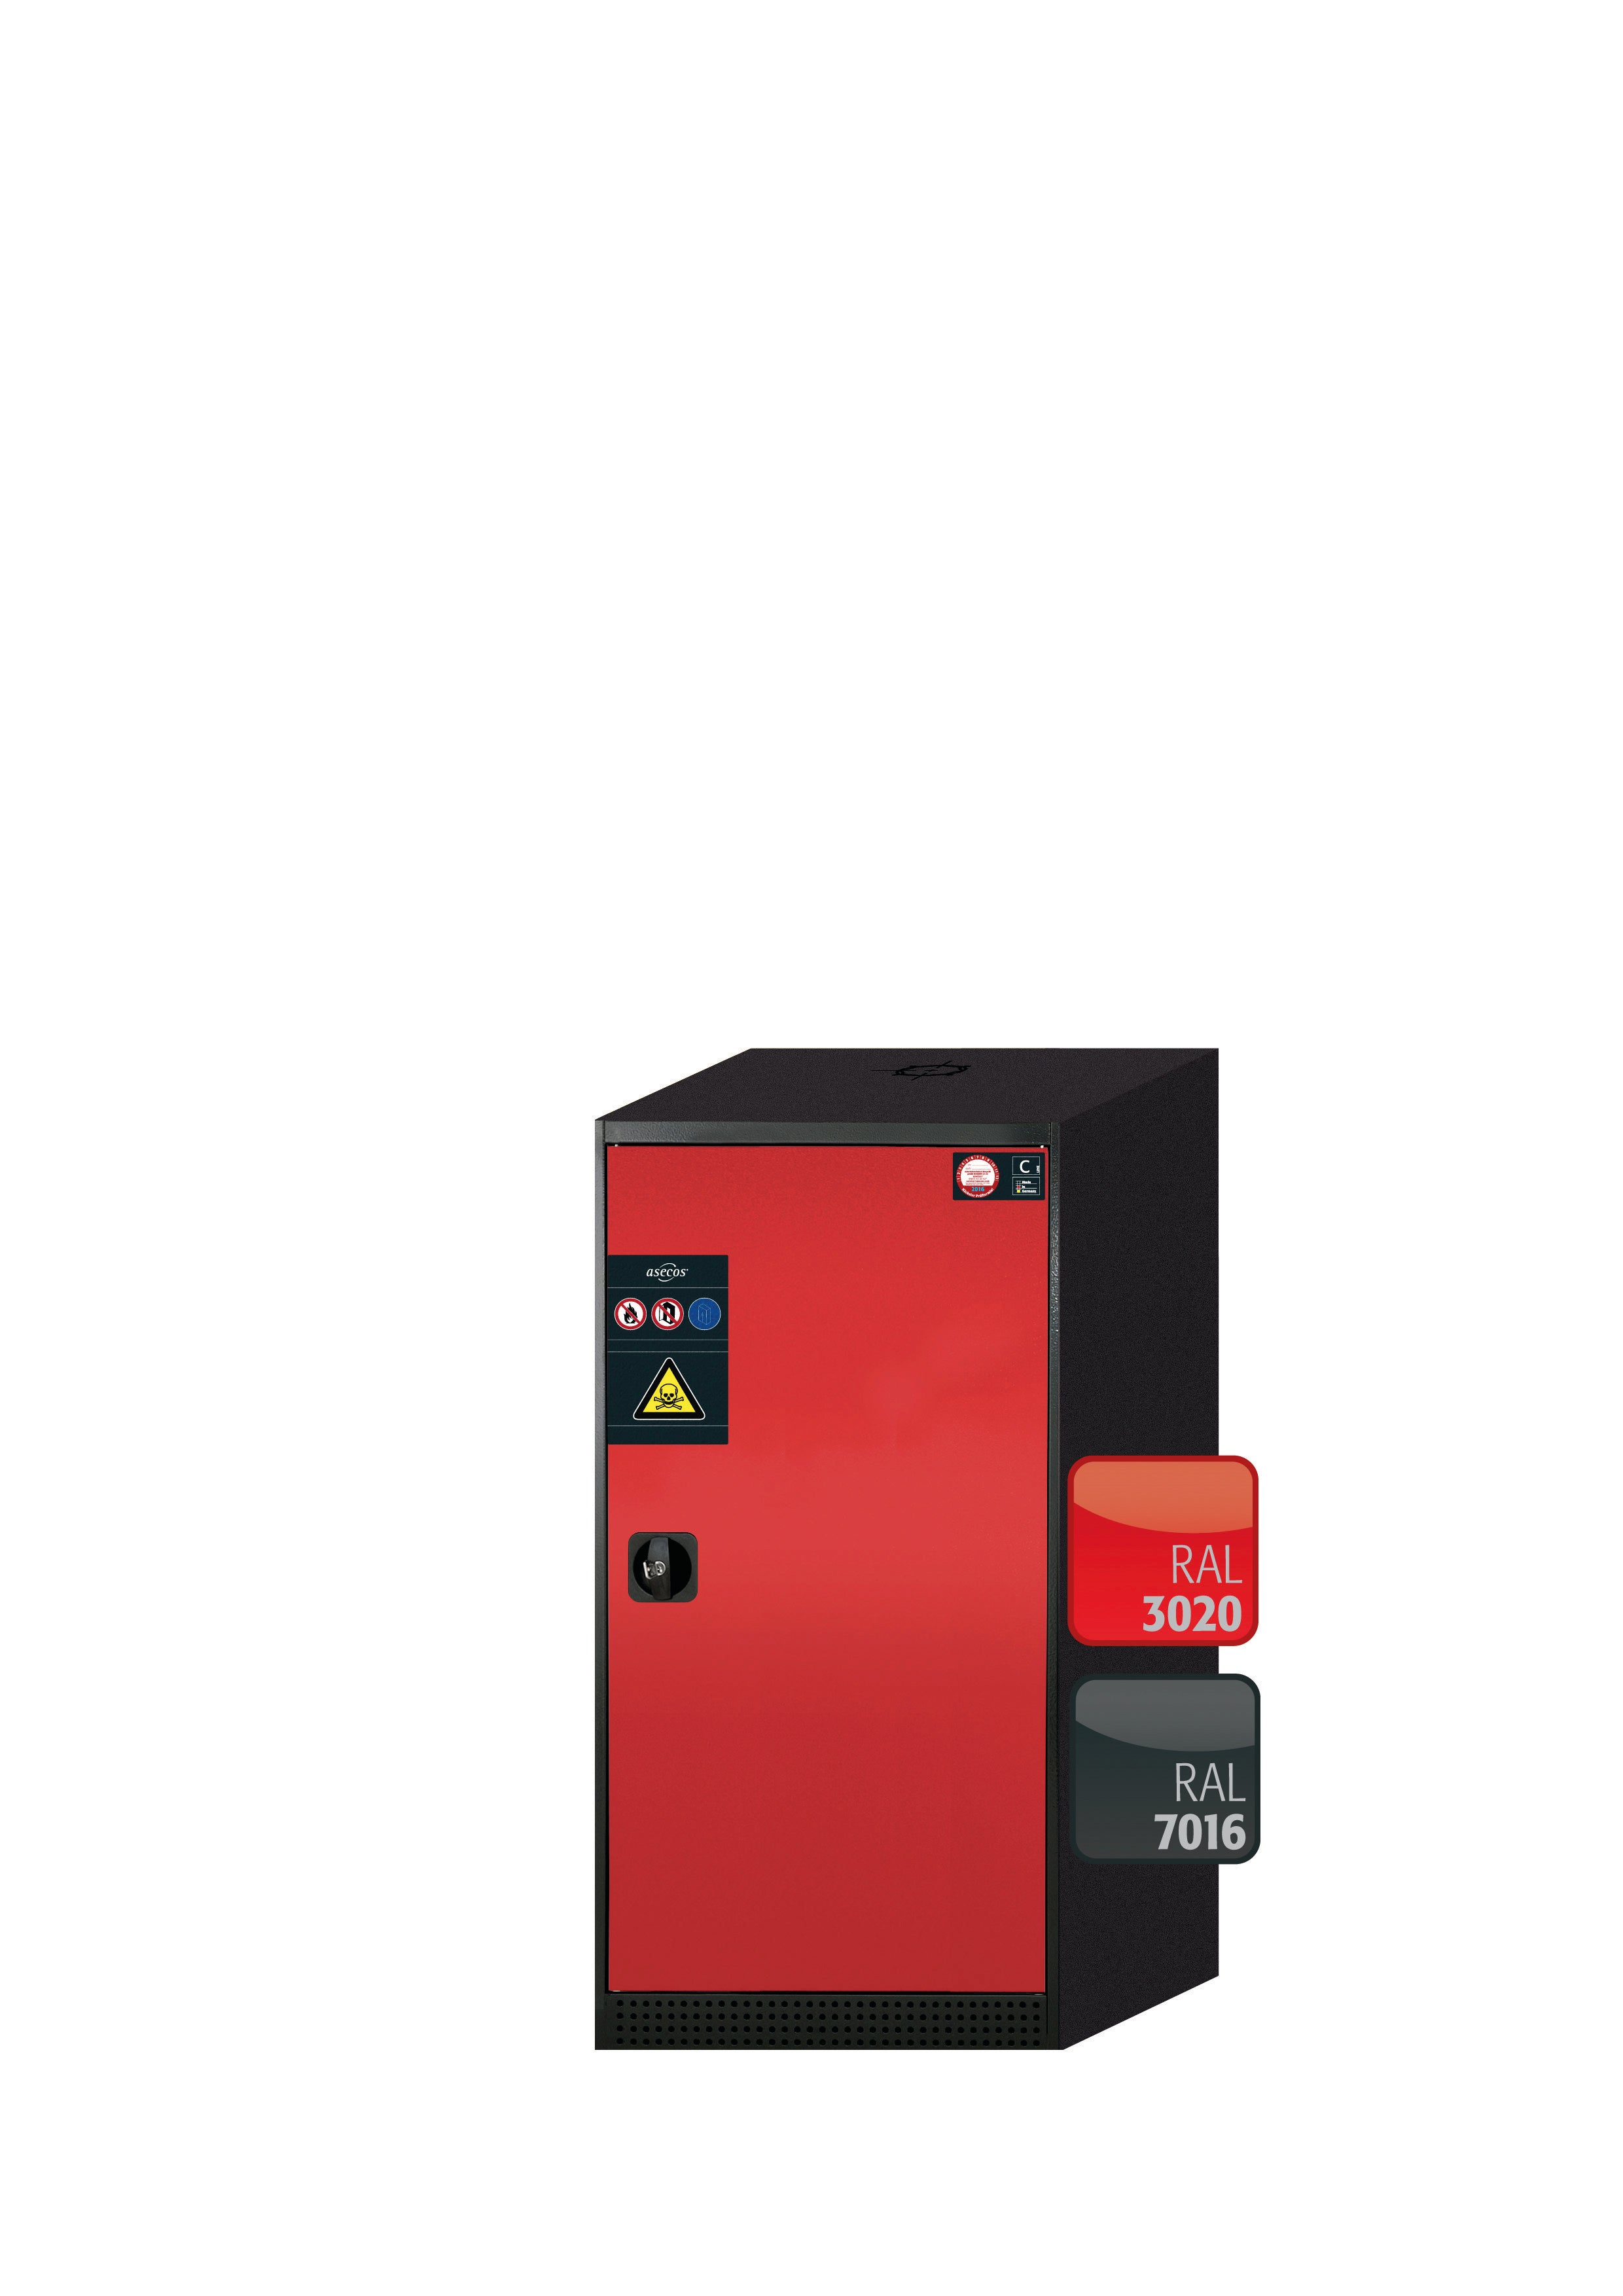 Armoire chimique CS-CLASSIC modèle CS.110.054.R en rouge signalisation RAL 3020 avec 2x étagères standard (tôle d'acier)